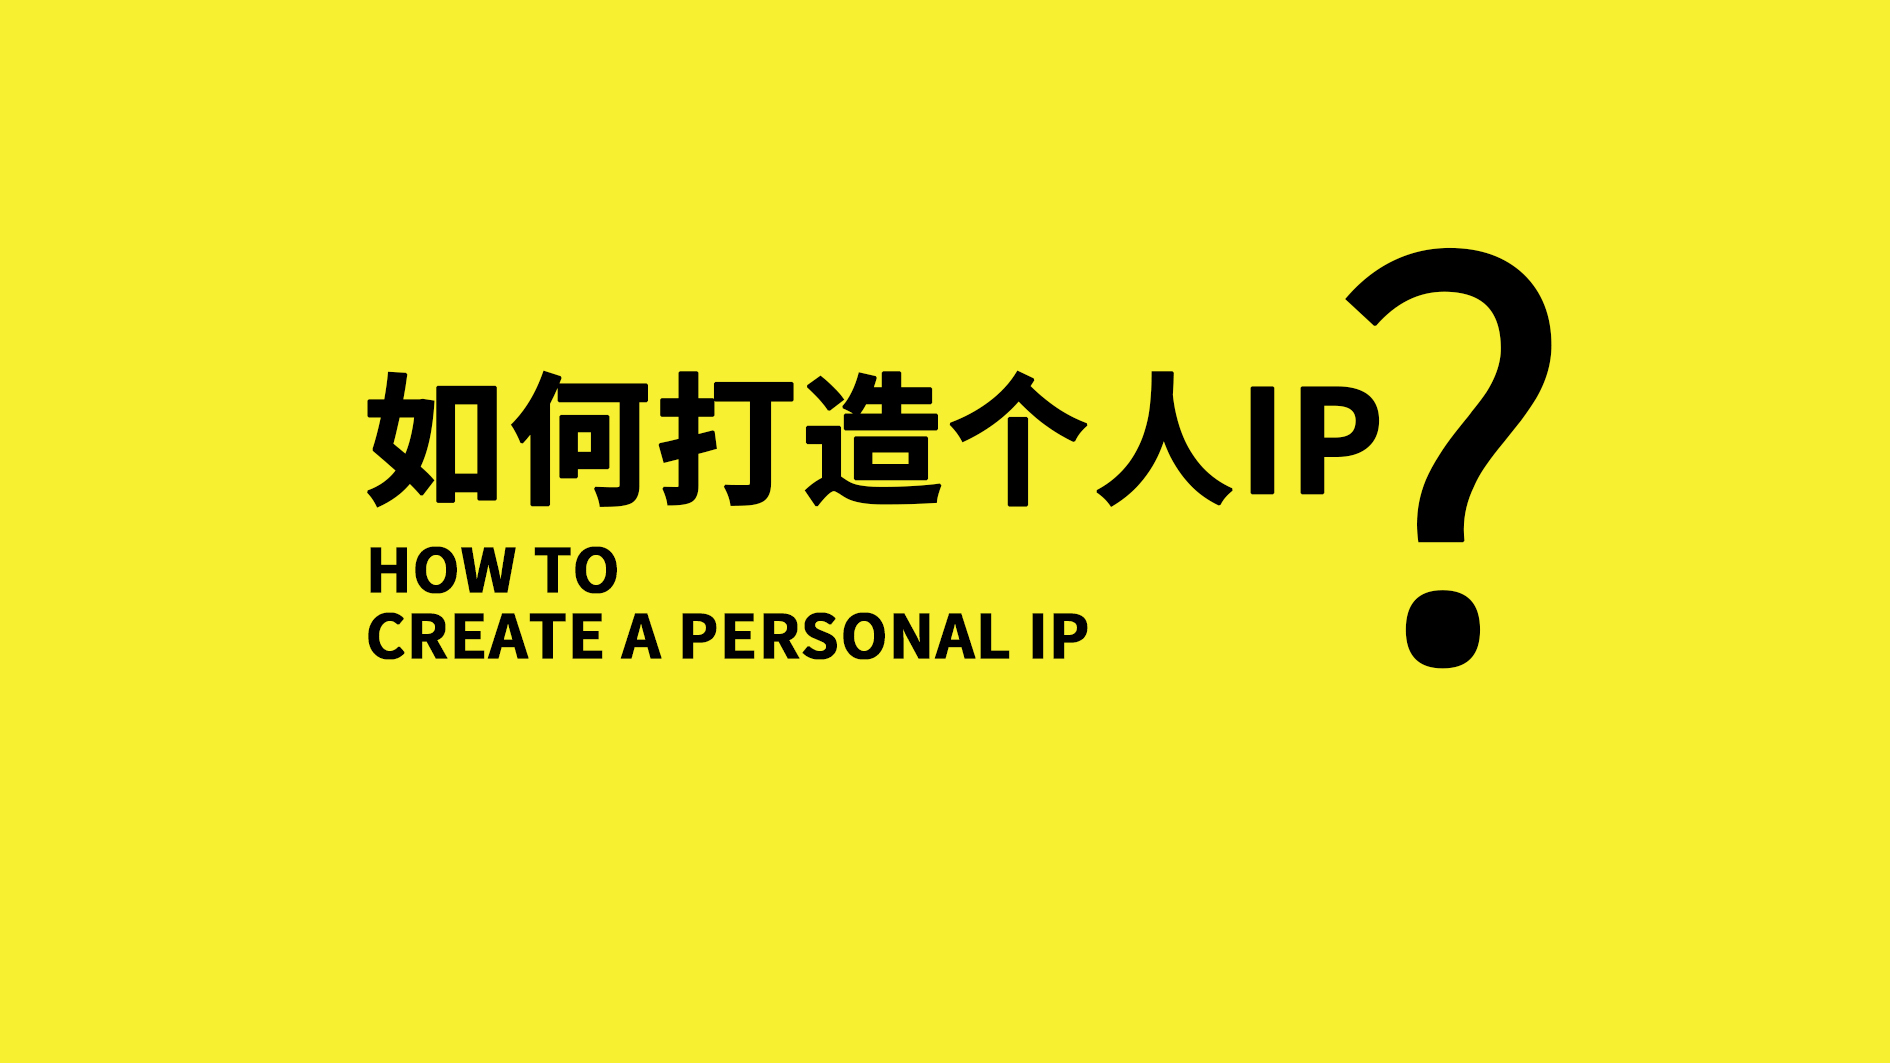 每个人都可以打造自己的个人IP，IP也值得每个人去做一遍